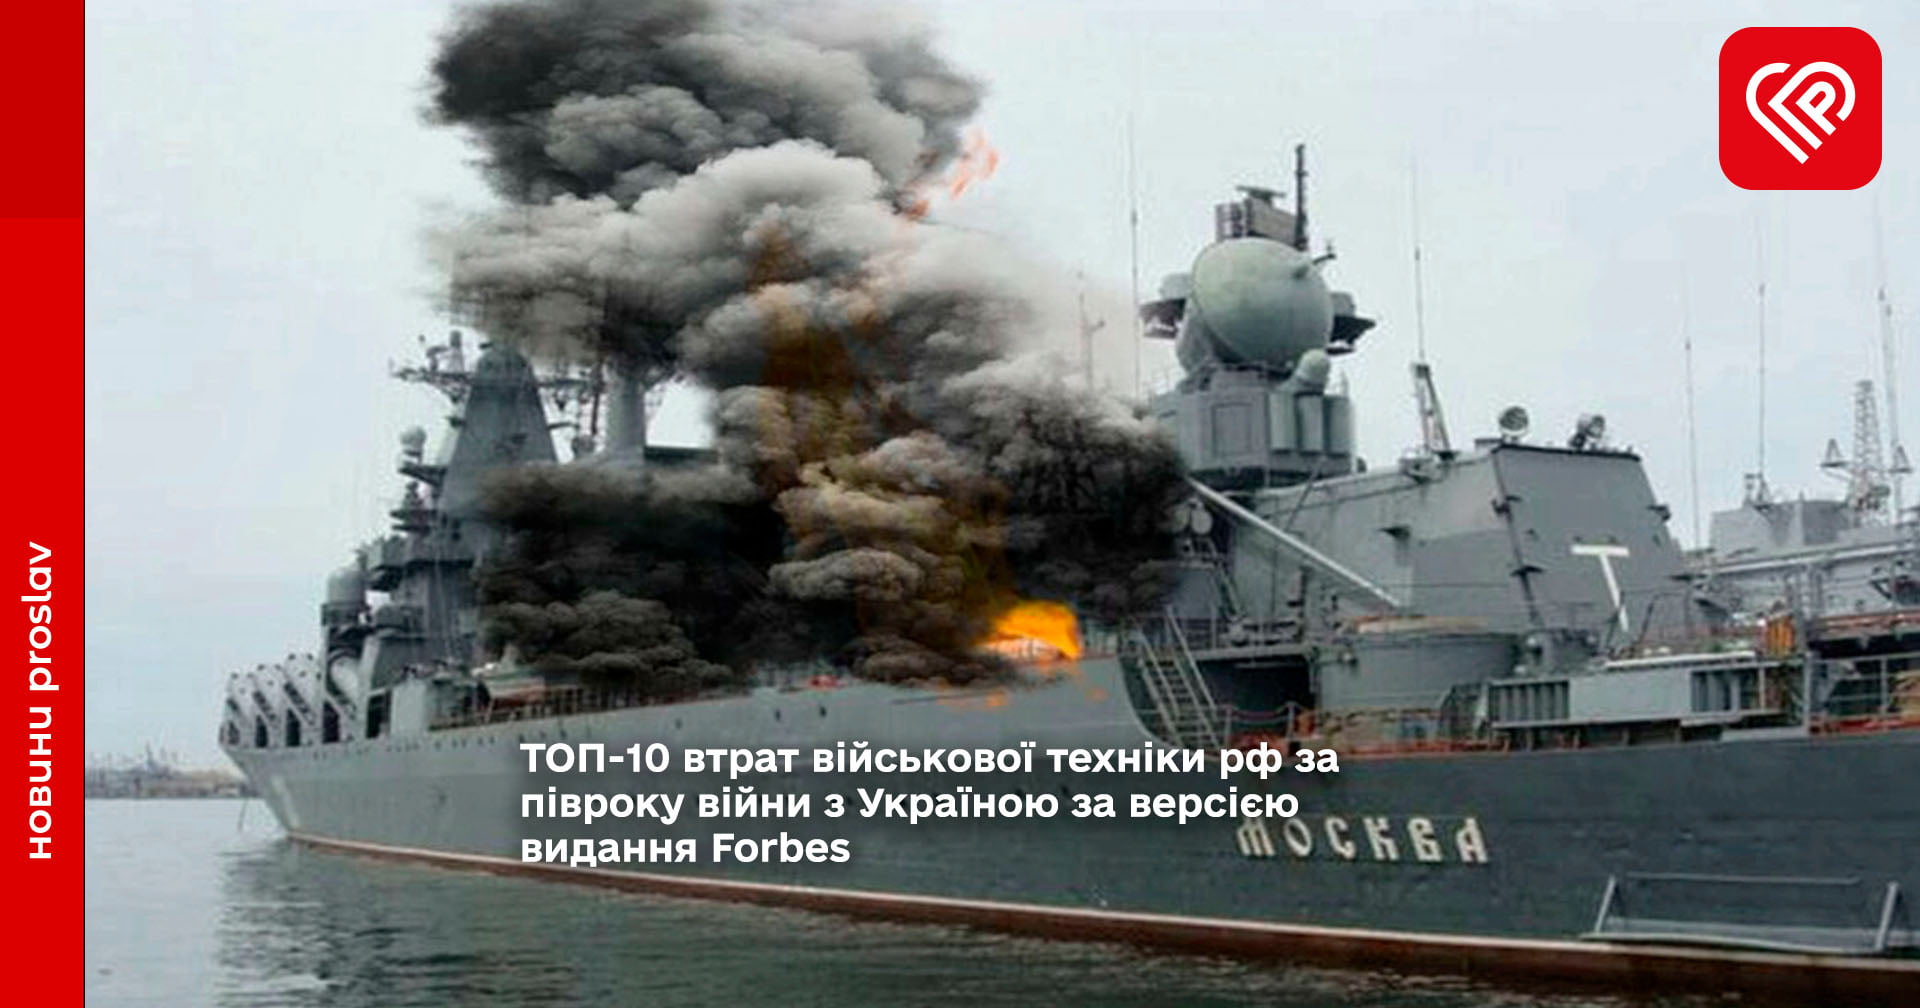 ТОП-10 втрат військової техніки рф за півроку війни з Україною за версією видання Forbes